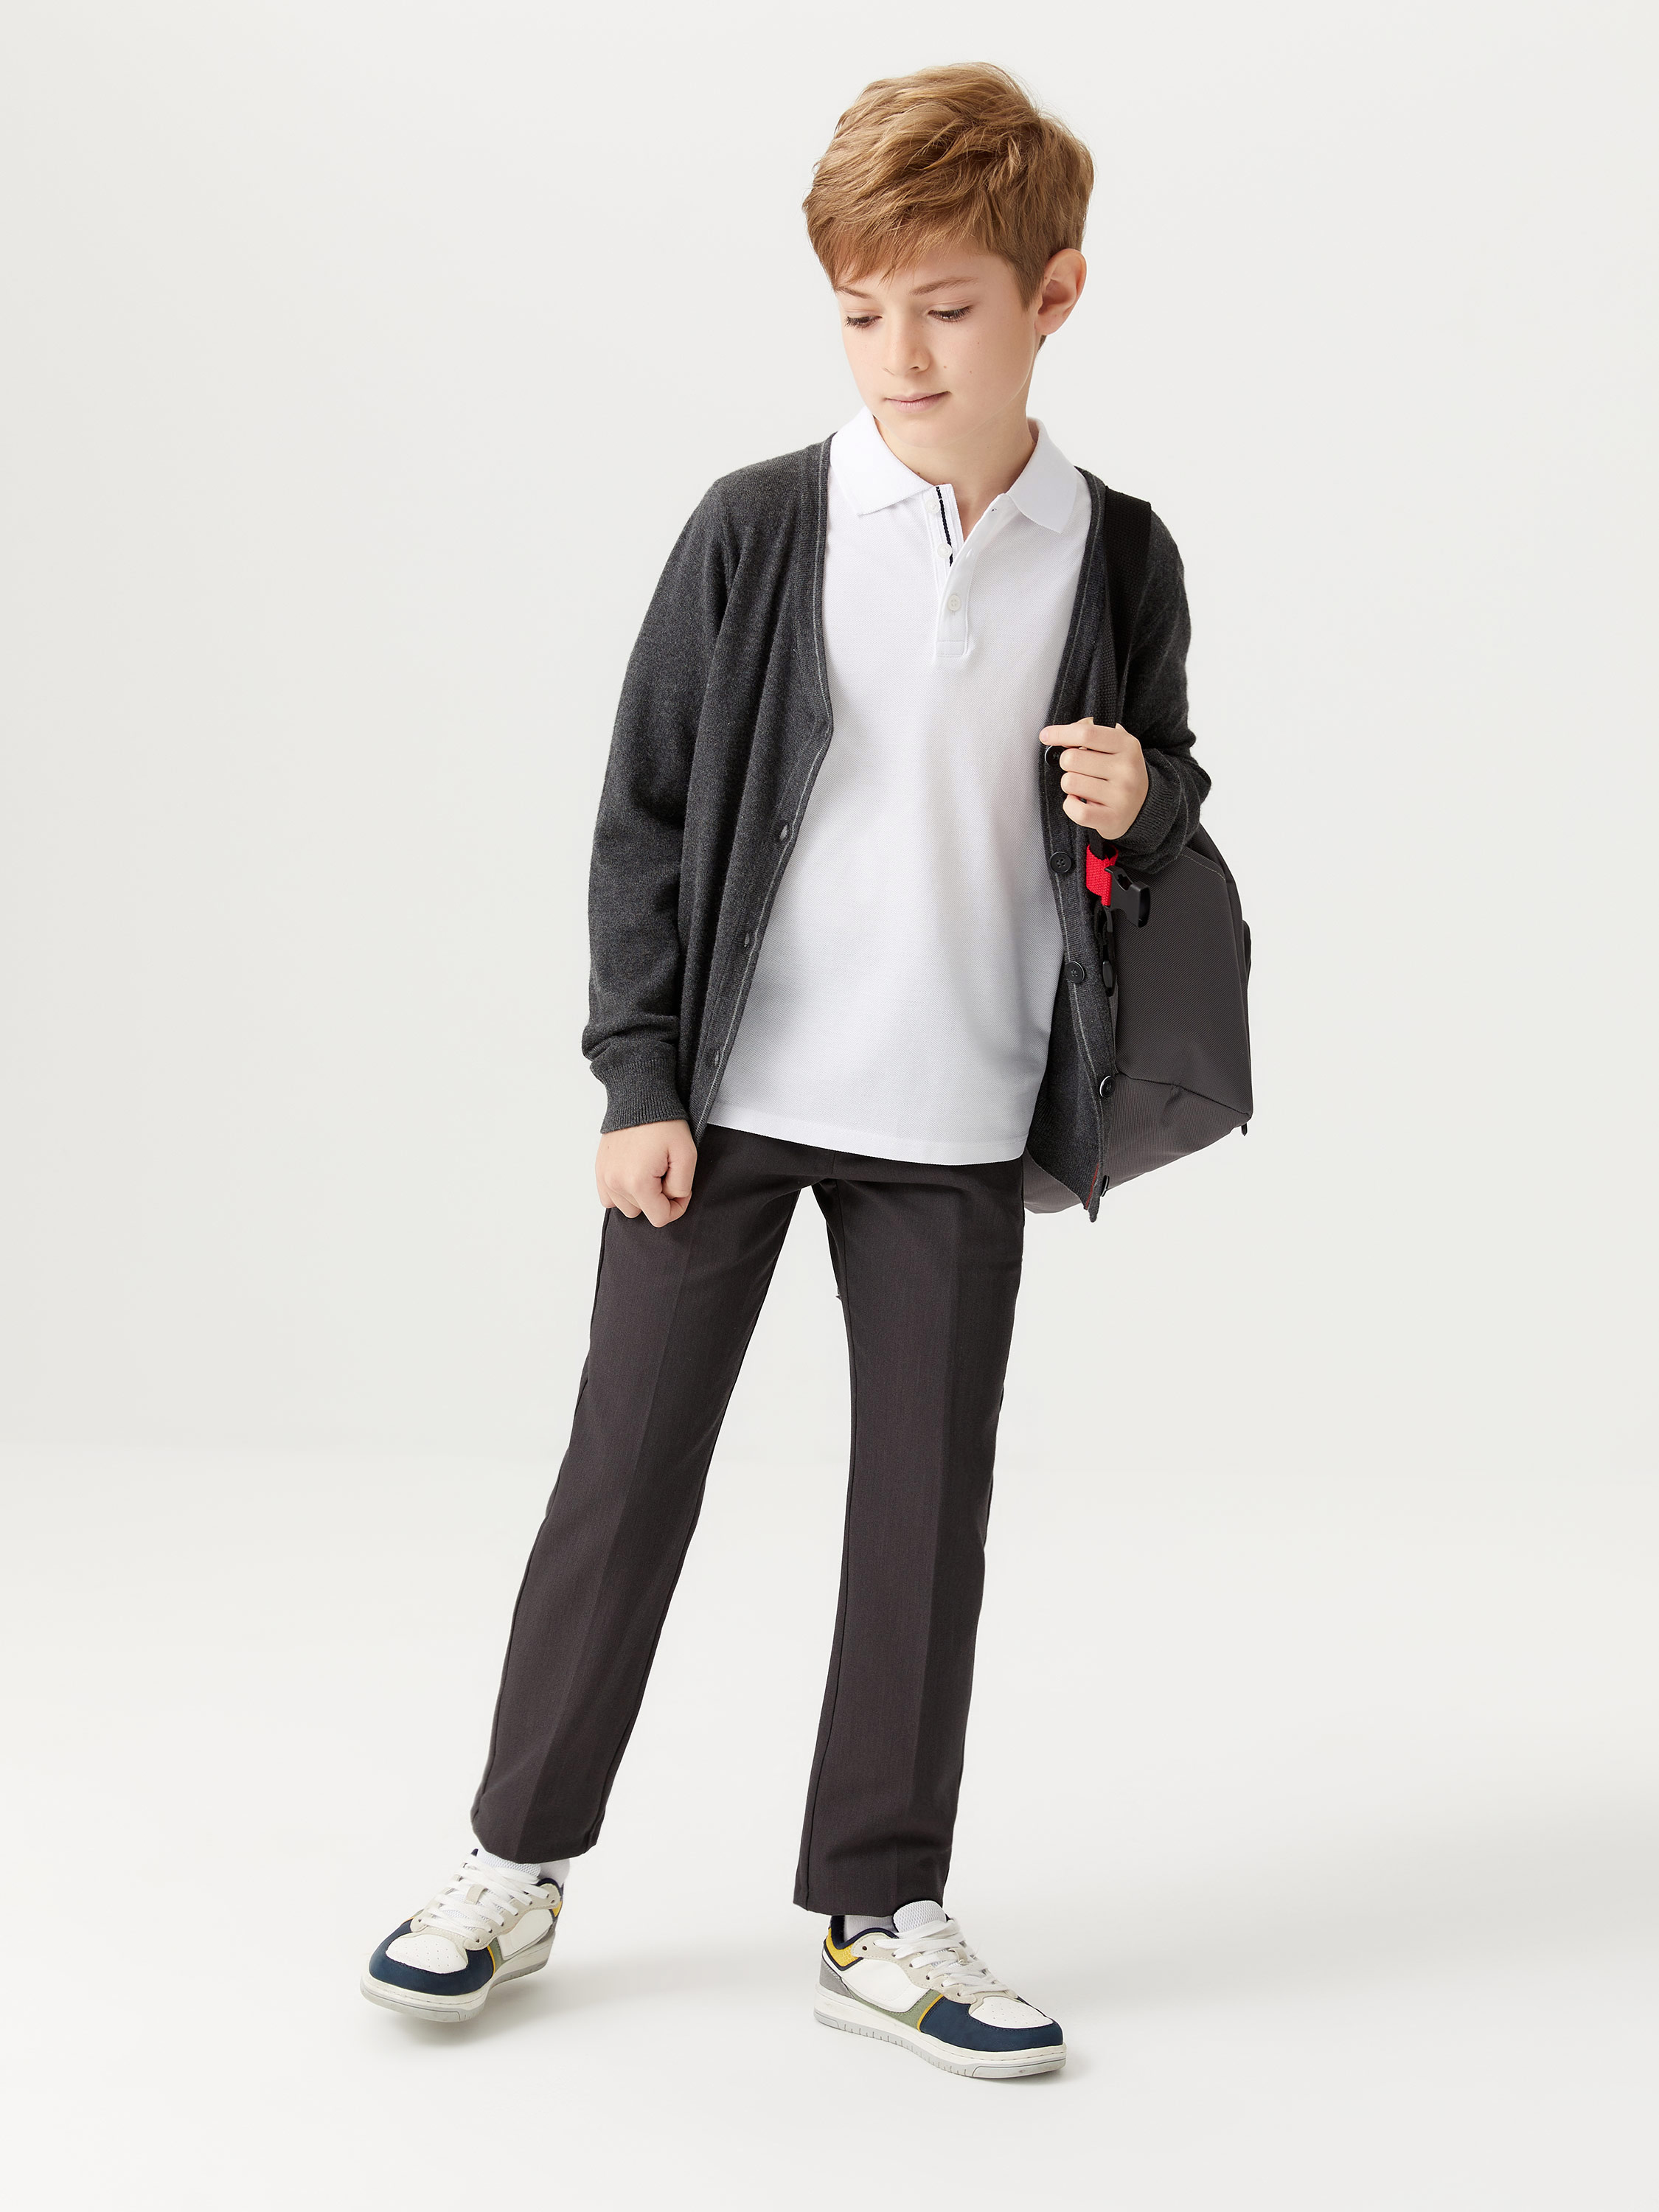 Базовые школьные брюк�� для мальчиков цвет: темно-серый, артикул: 1808071531– купить в интернет-магазине sela